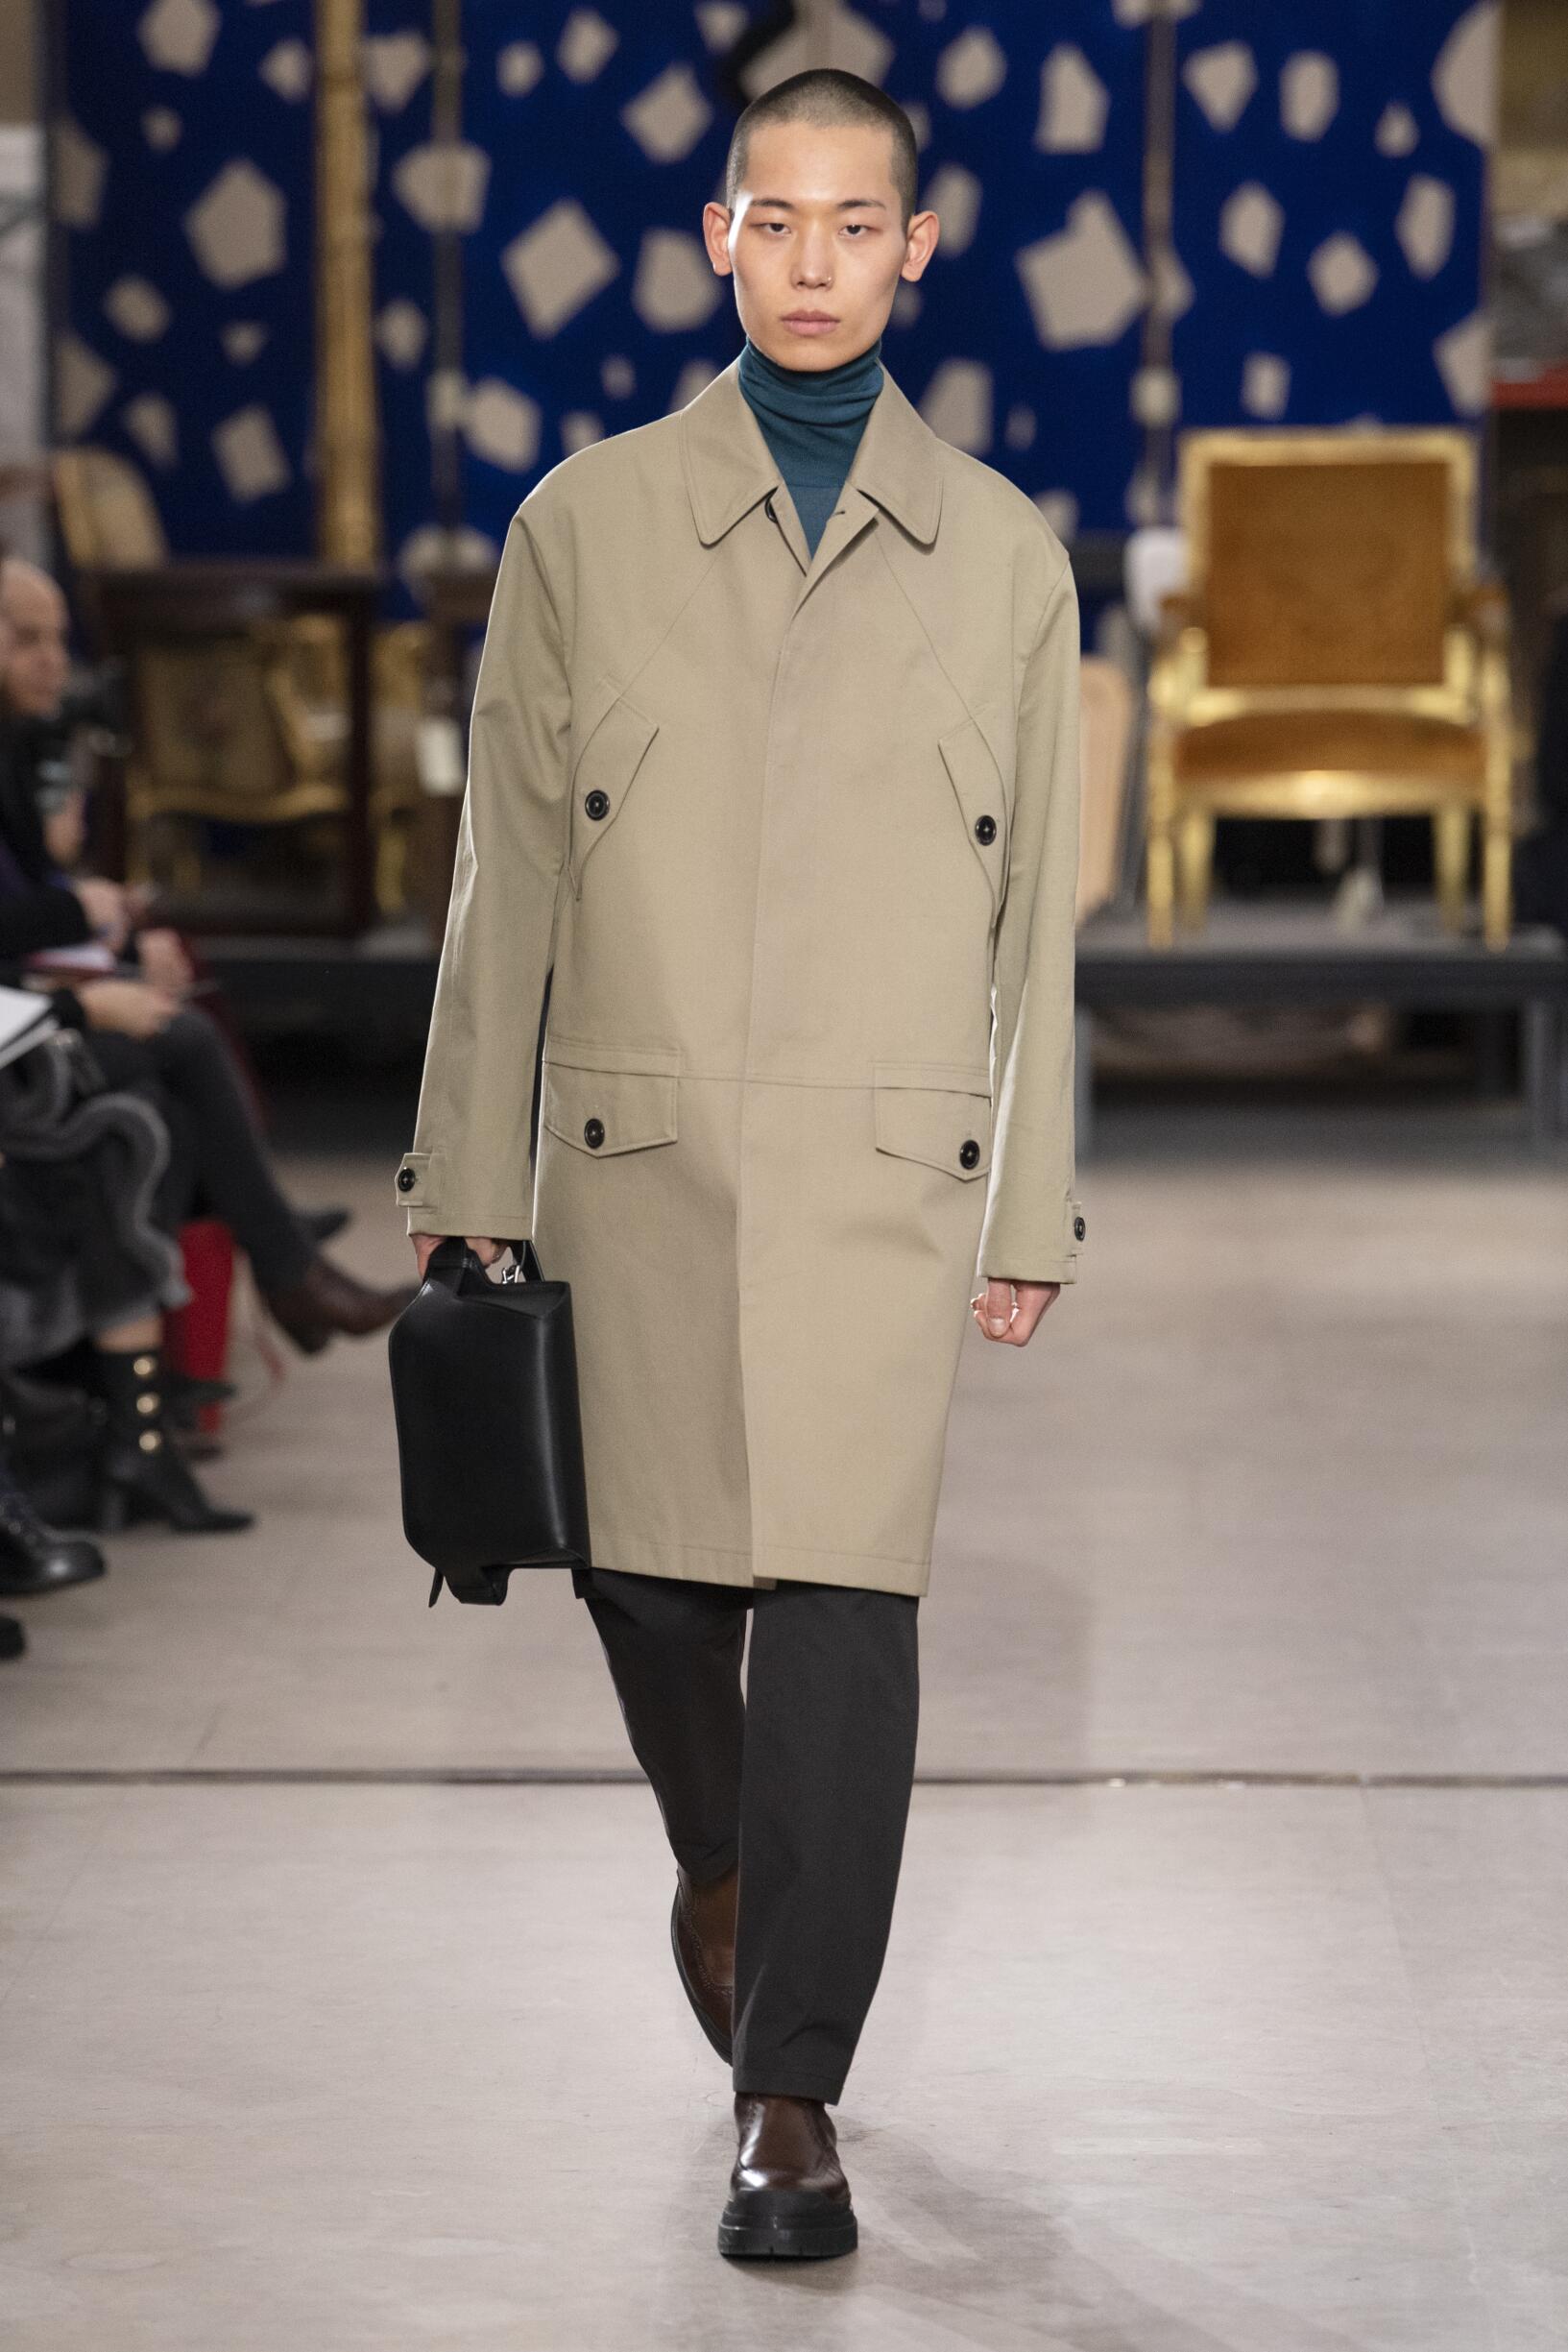 Hermès Fall 2019 Catwalk